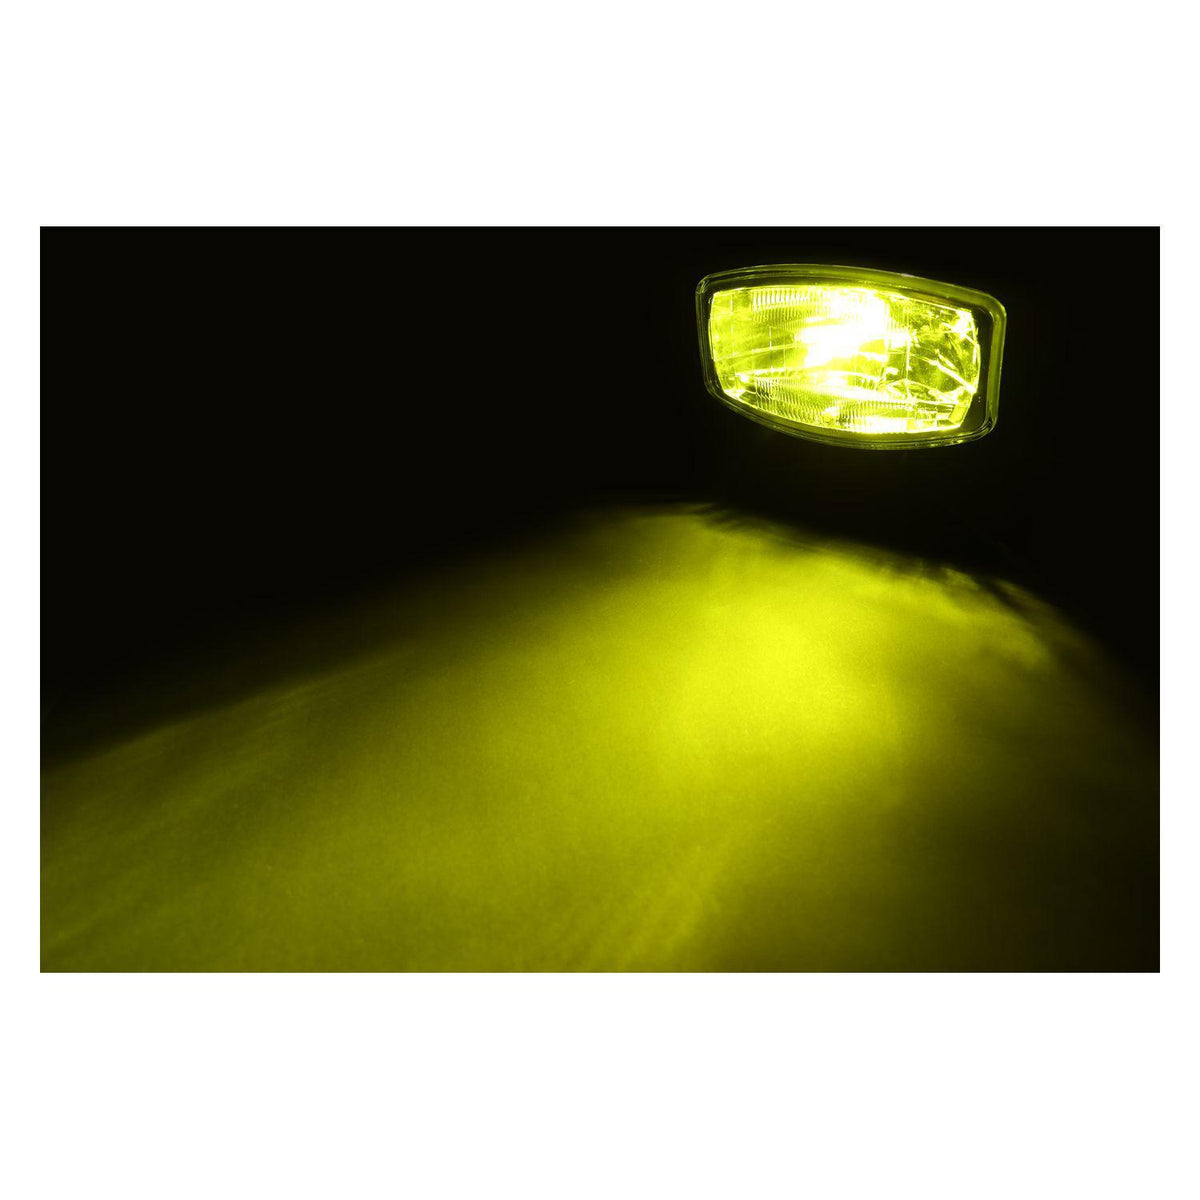 LED｢COBタイプ｣バルブ H7タイプ ホワイト/イエロー 12V/24V車共用 ジェットイノウエ – トララボ